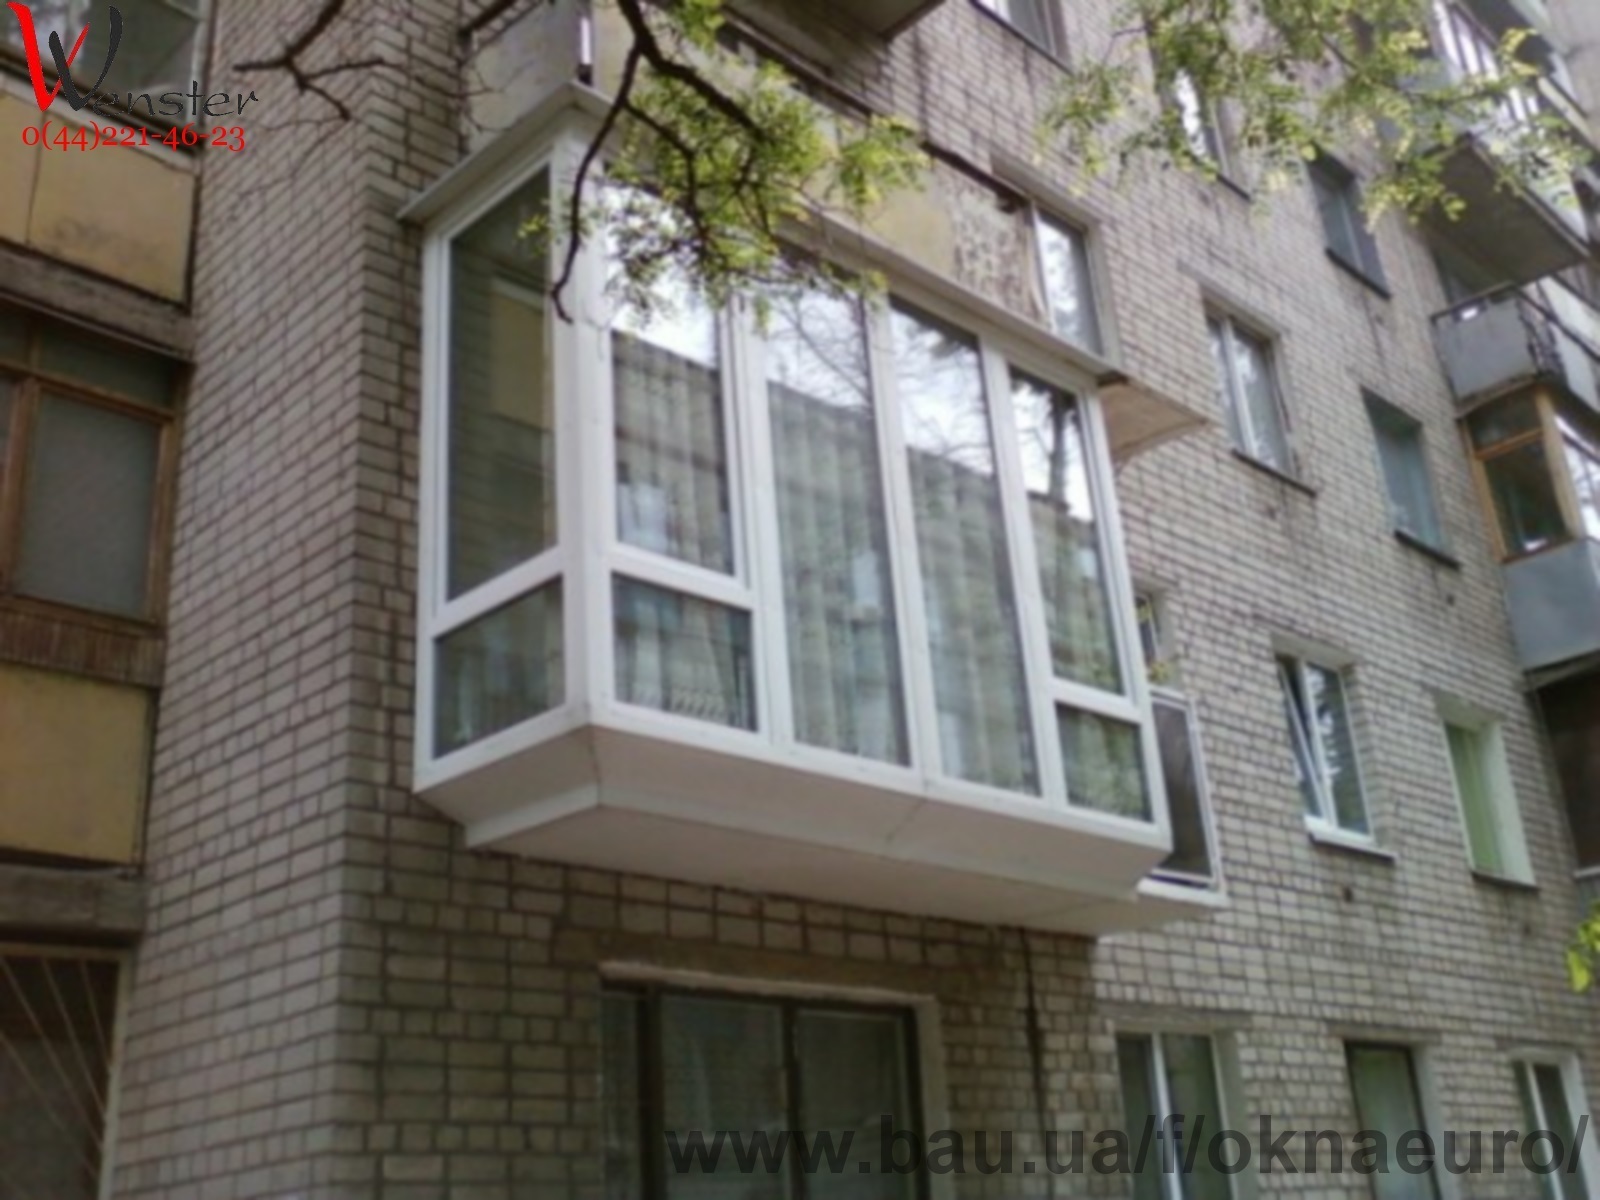 Увеличение балкона (или как увеличить балкон) - строительство и ремонт - отзывы о новостройках москвы и области на форуме infodo.